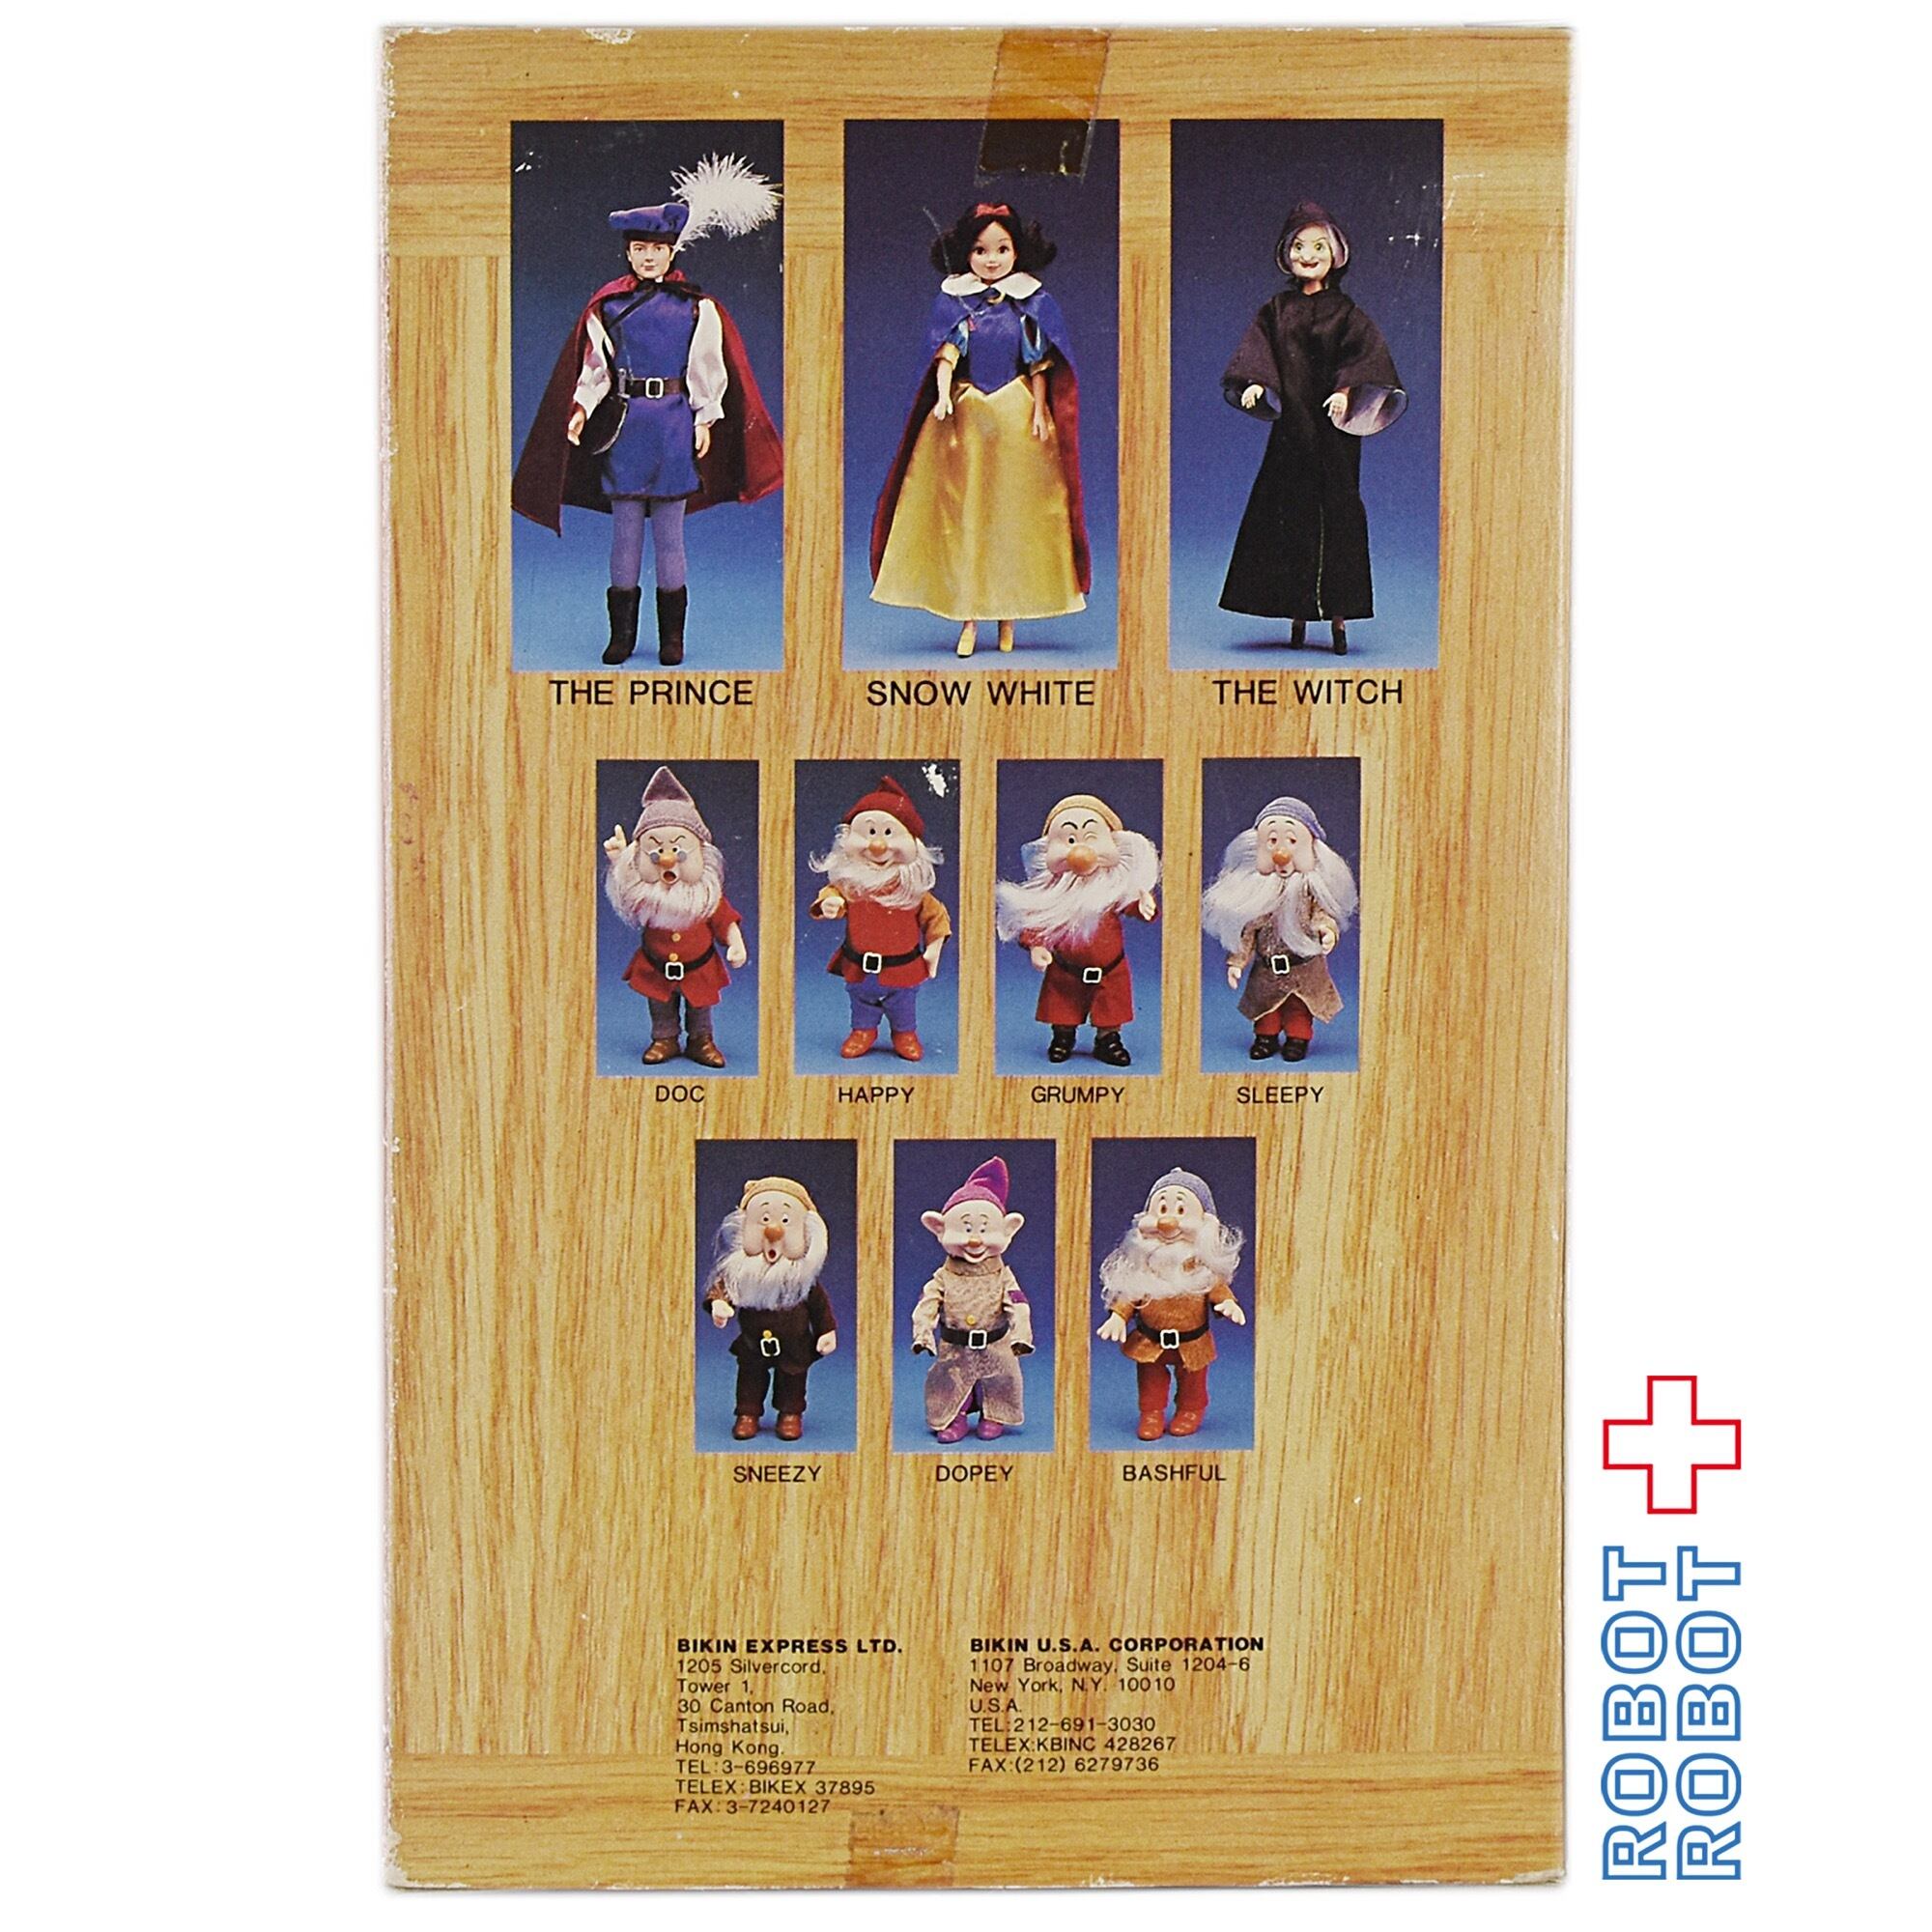 ディズニー 白雪姫と七人のこびと ドワーフ人形7体セット 箱入 